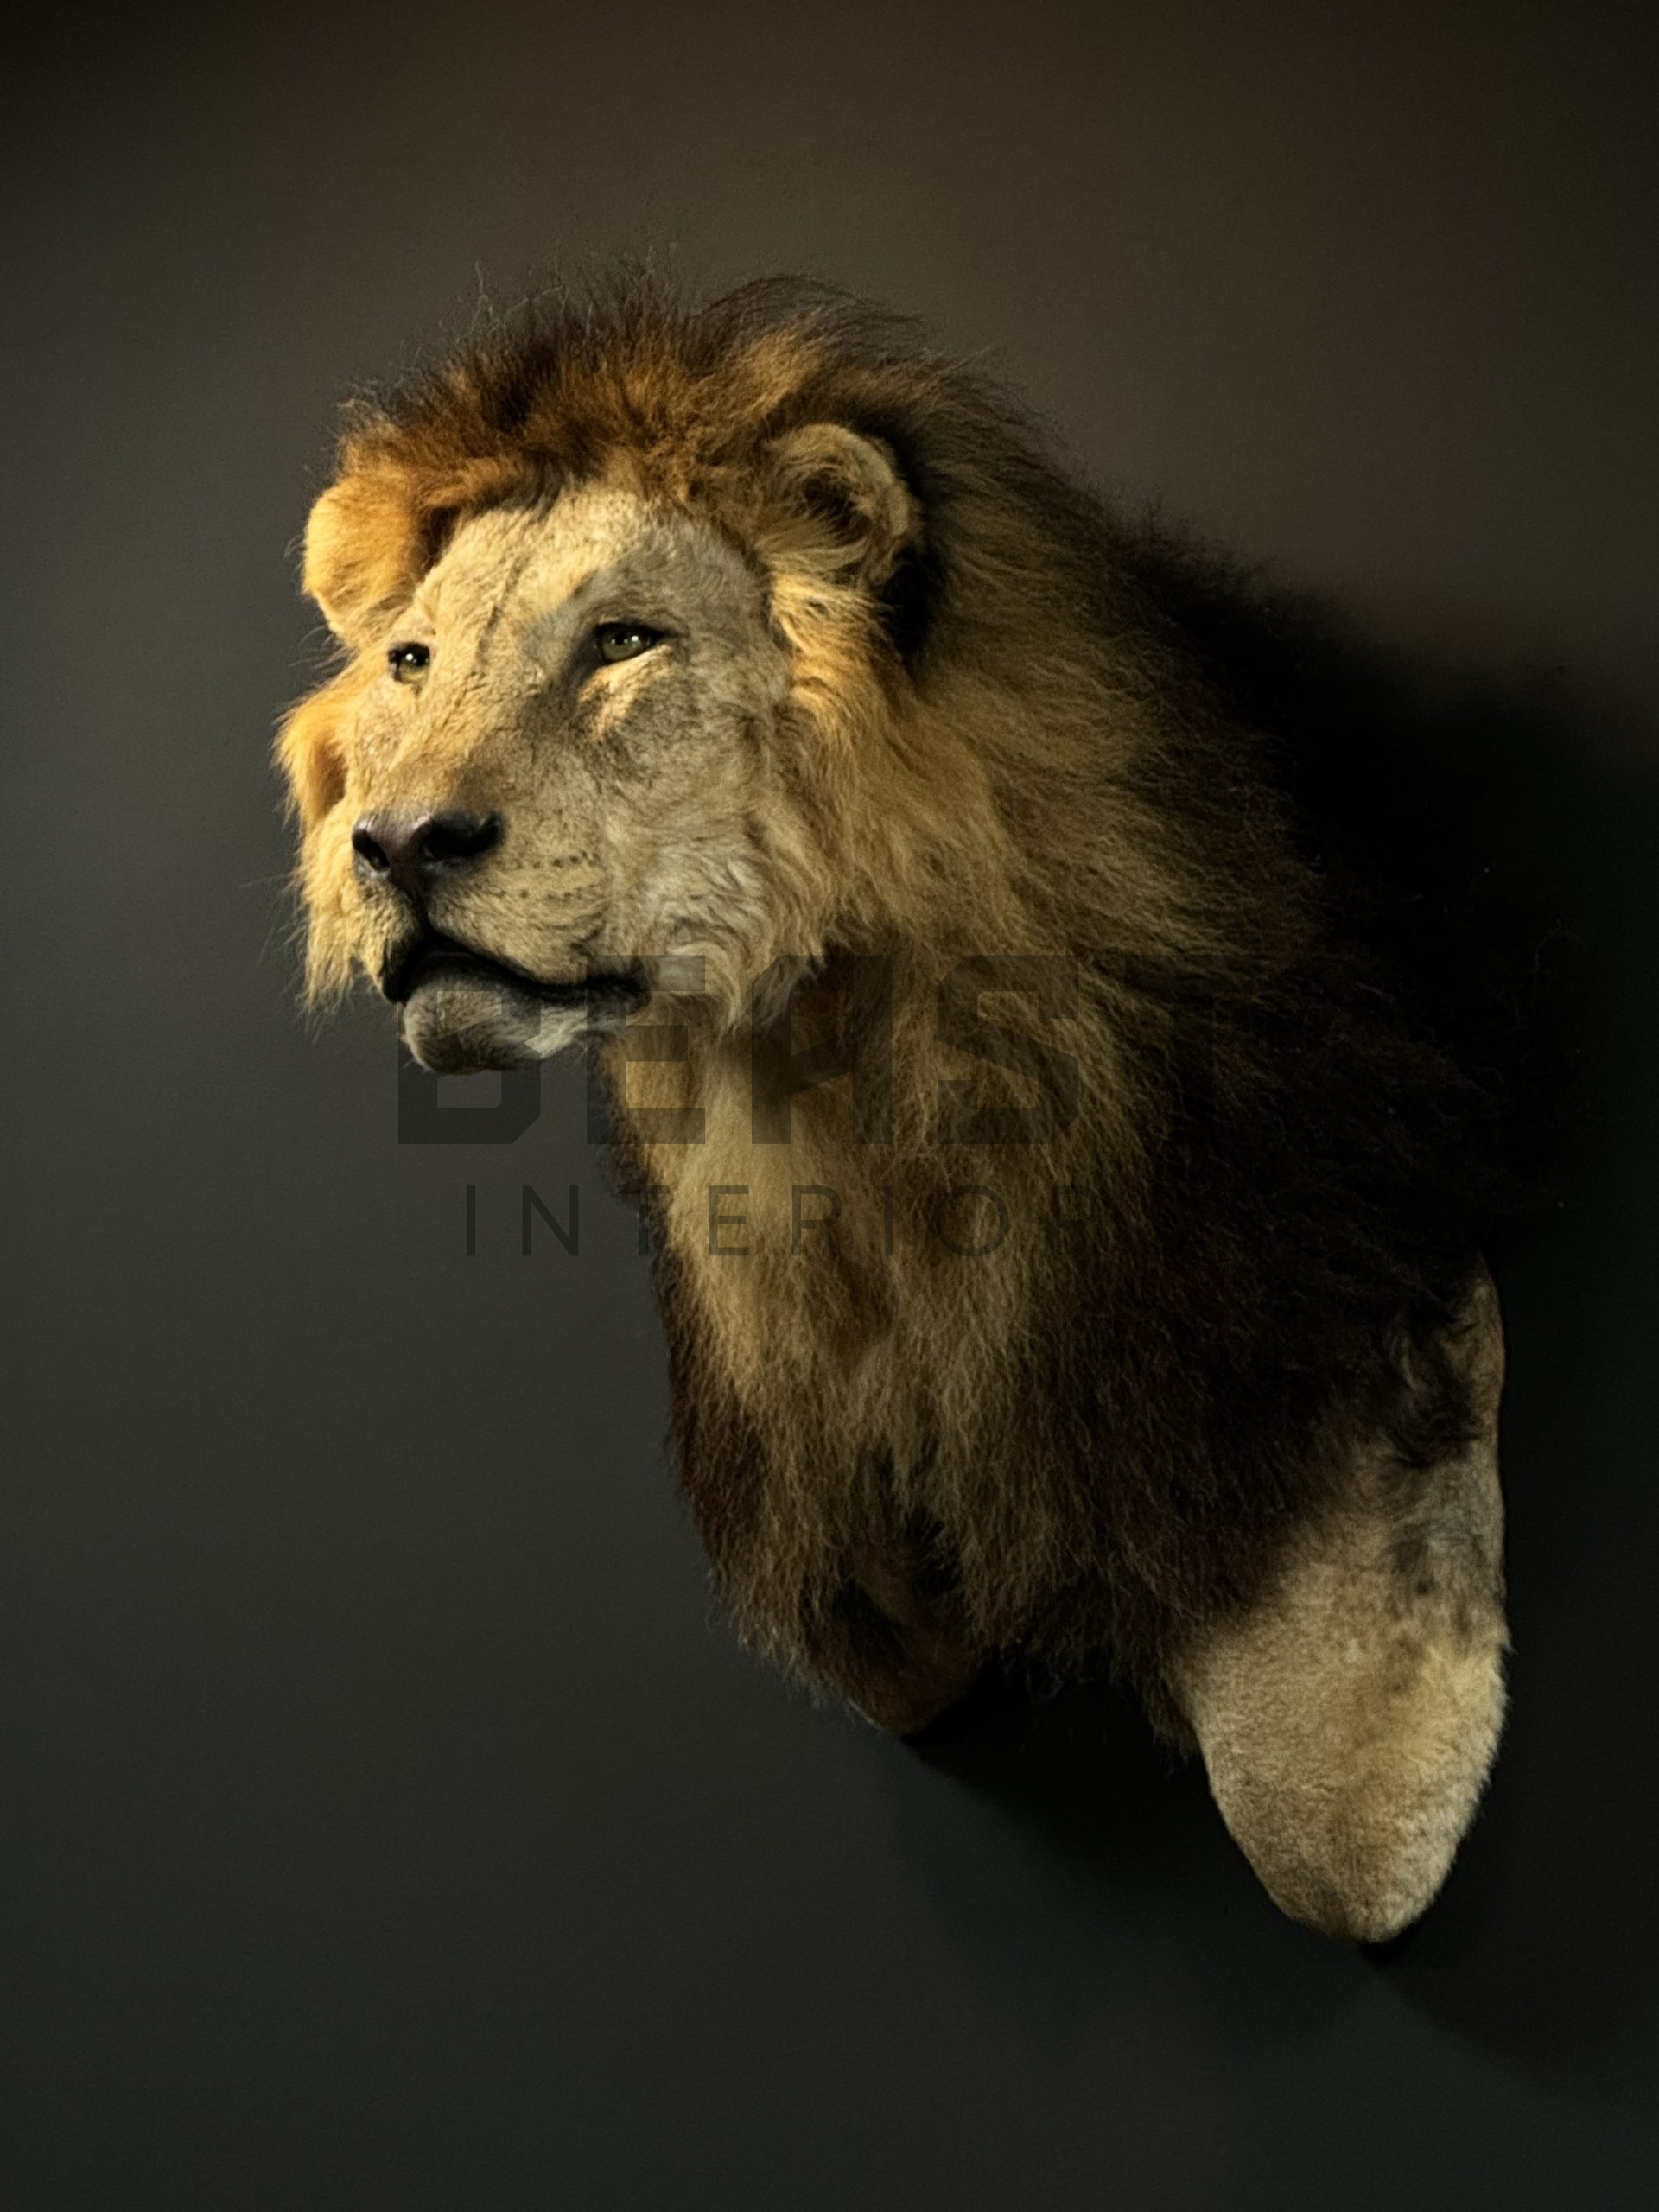 Opgezette kop van een leeuw